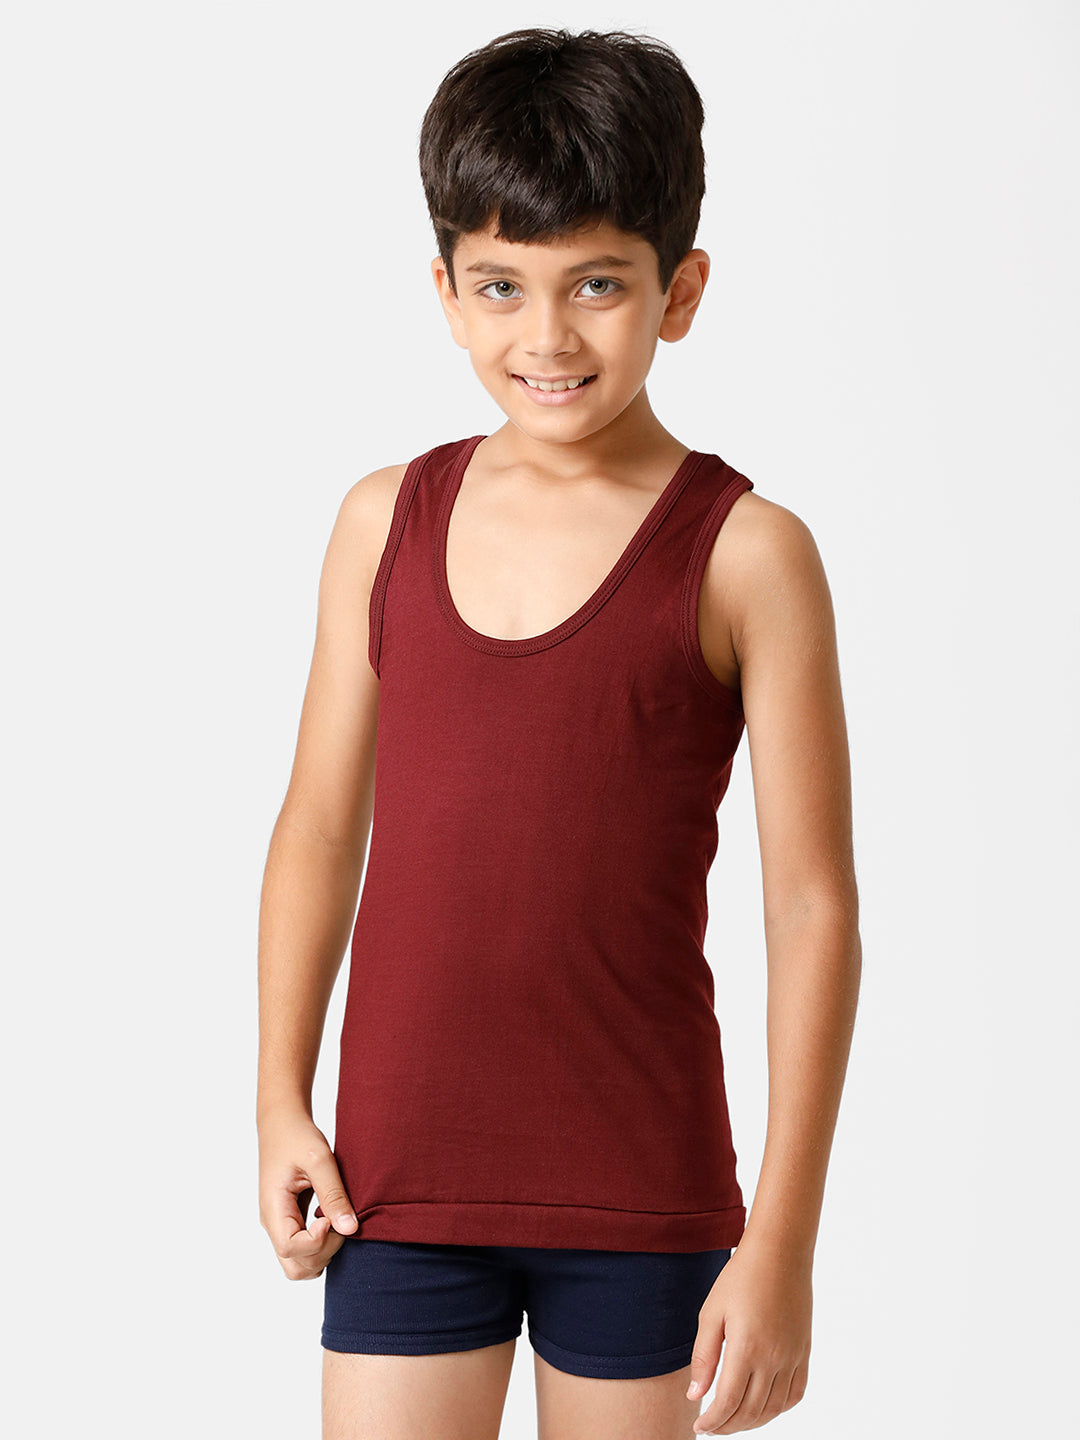 Boys Cotton Innerwear - Manufacturer & Supplier from Nayagarh India